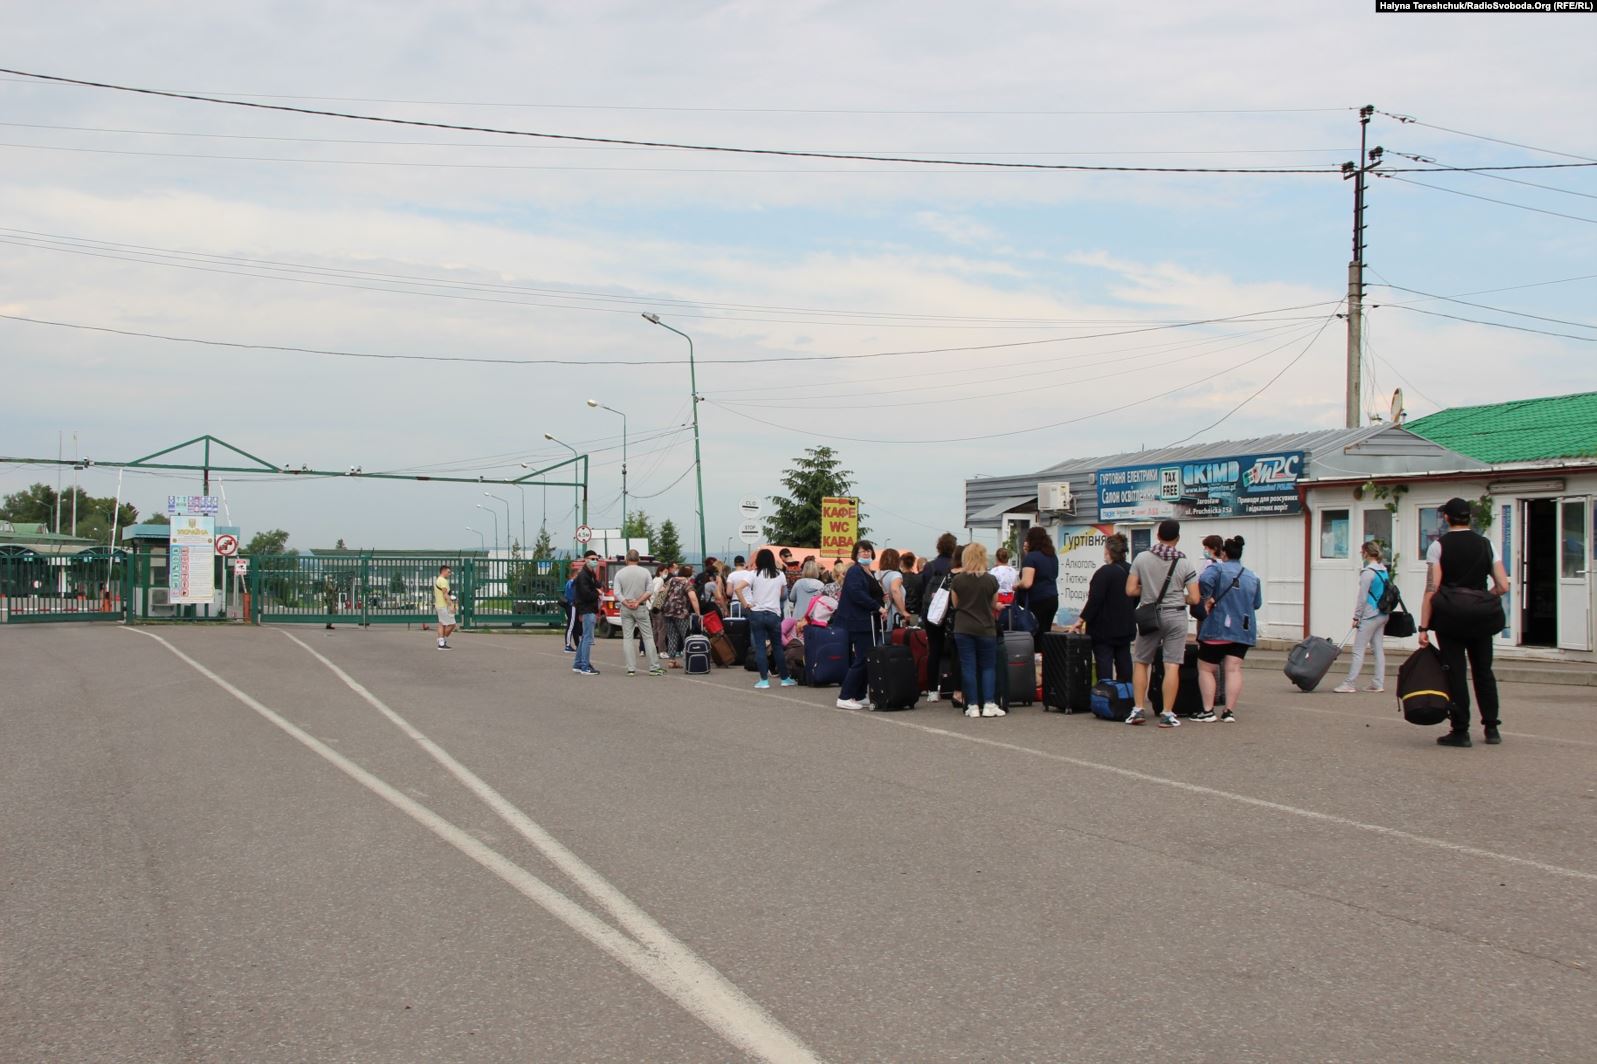 На кордоні з Польщею утворилися величезні черги: люди стоять на спеці по 9 годин